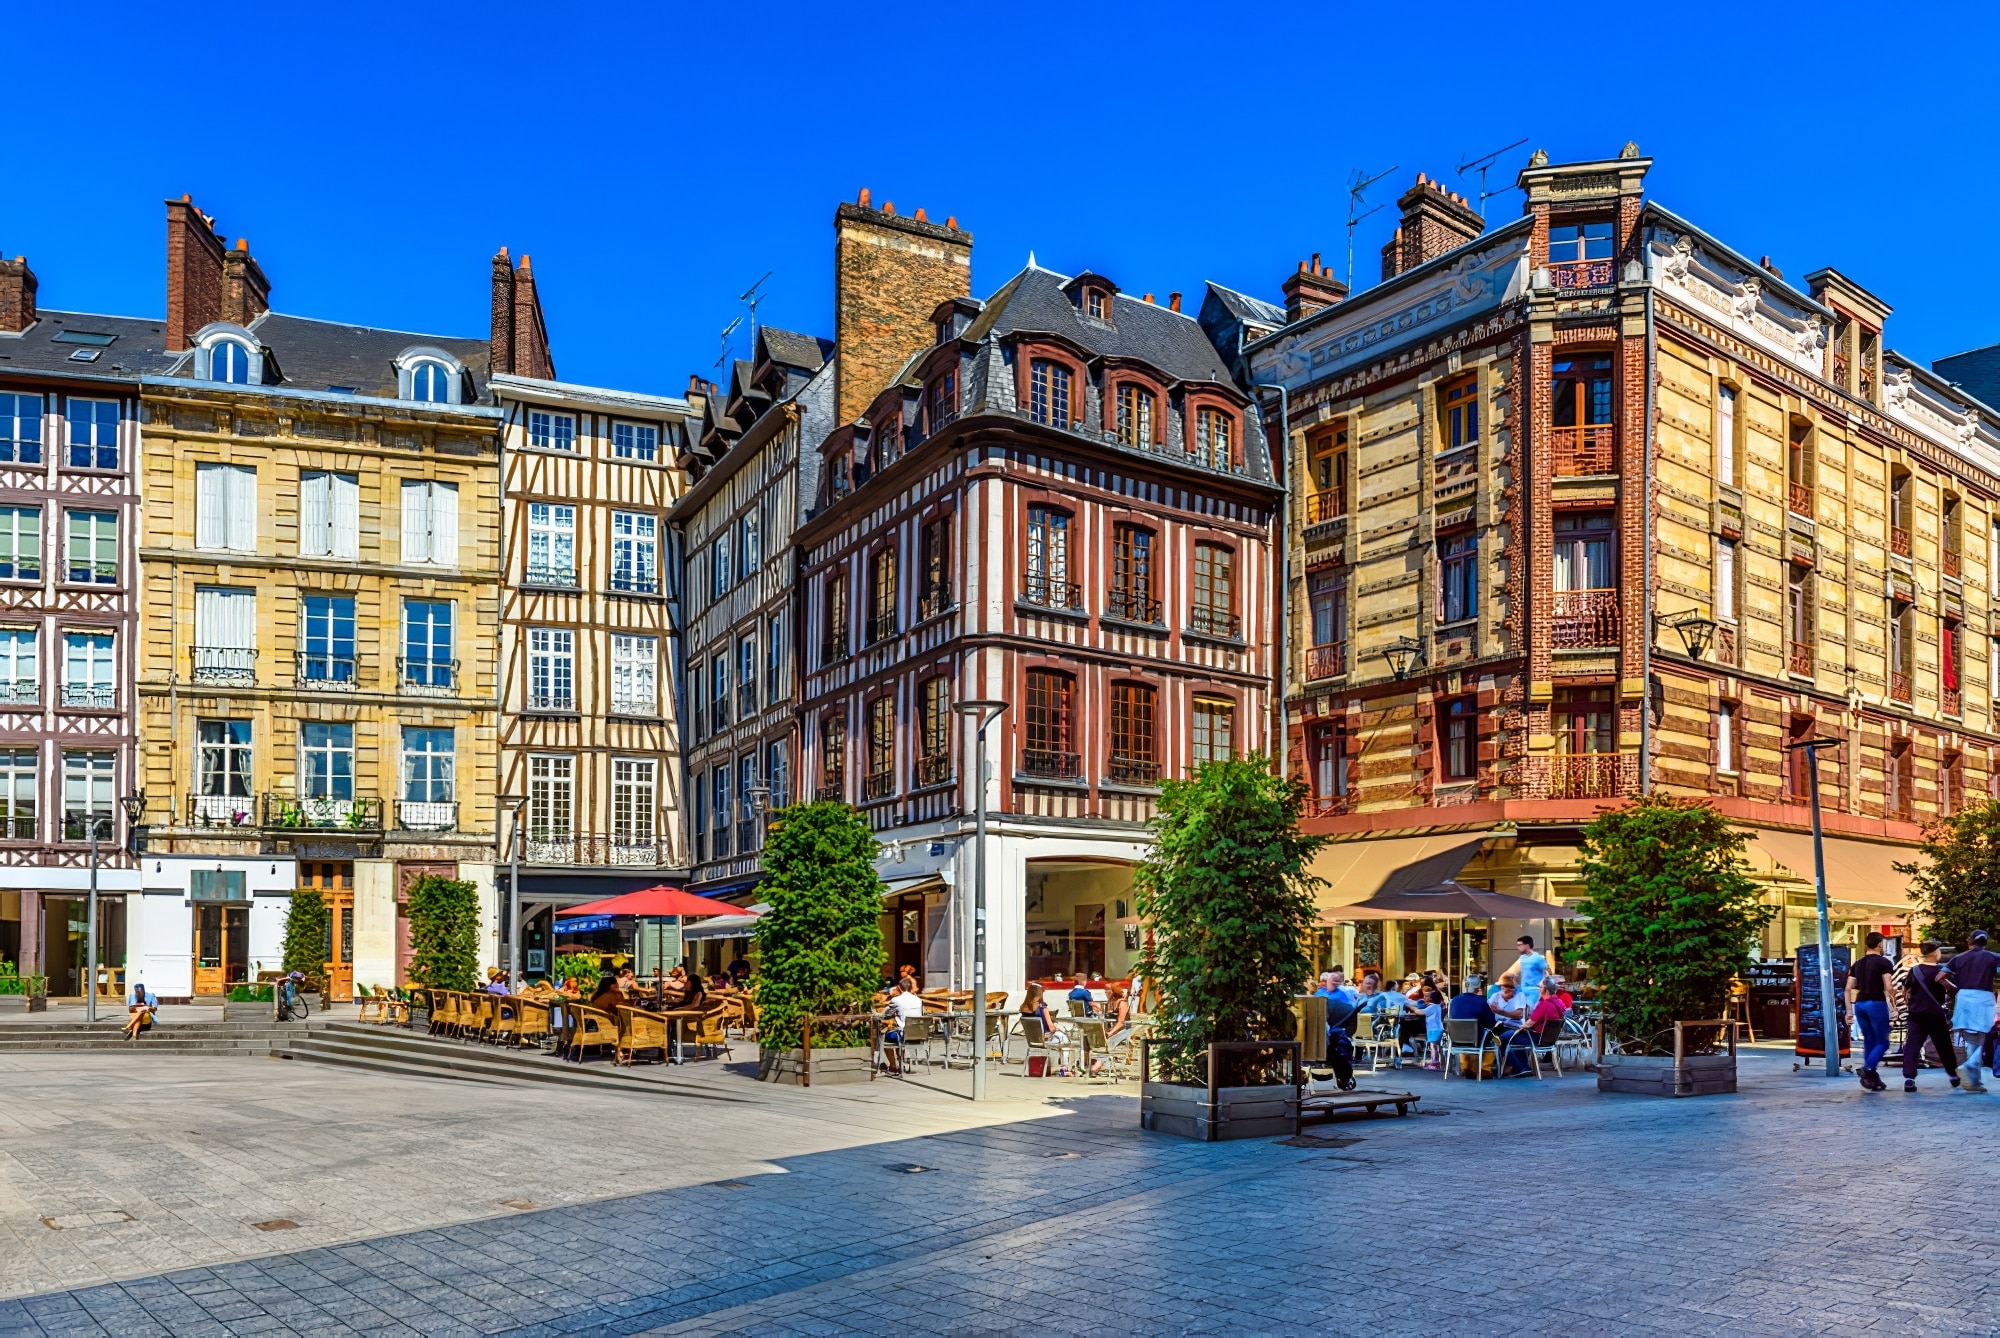 Rouen trace lieux personnages célèbres